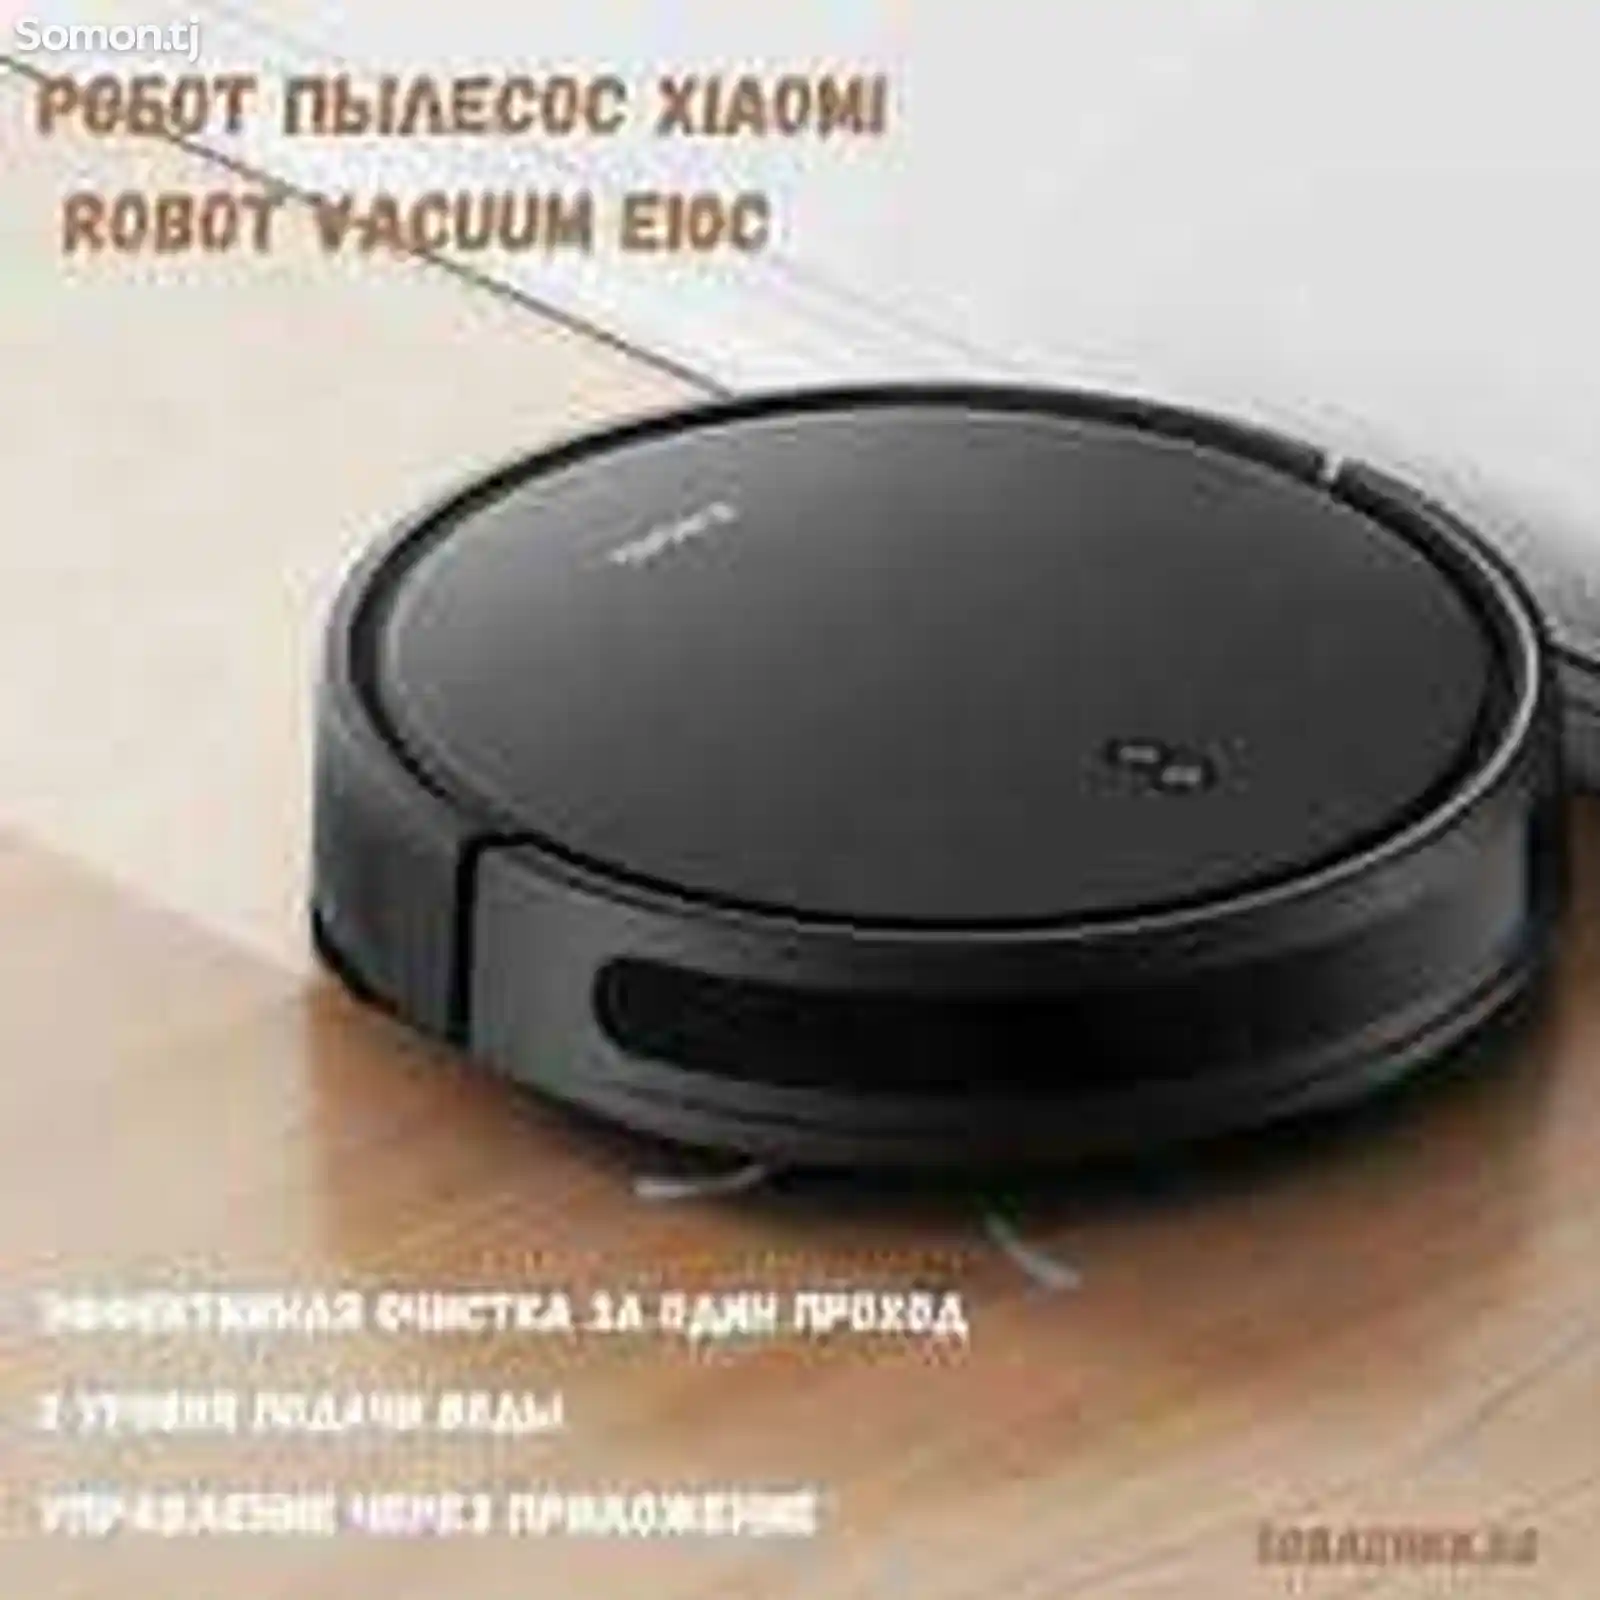 Робот-пылесос Xiaomi Robot Vacuum E10C-7